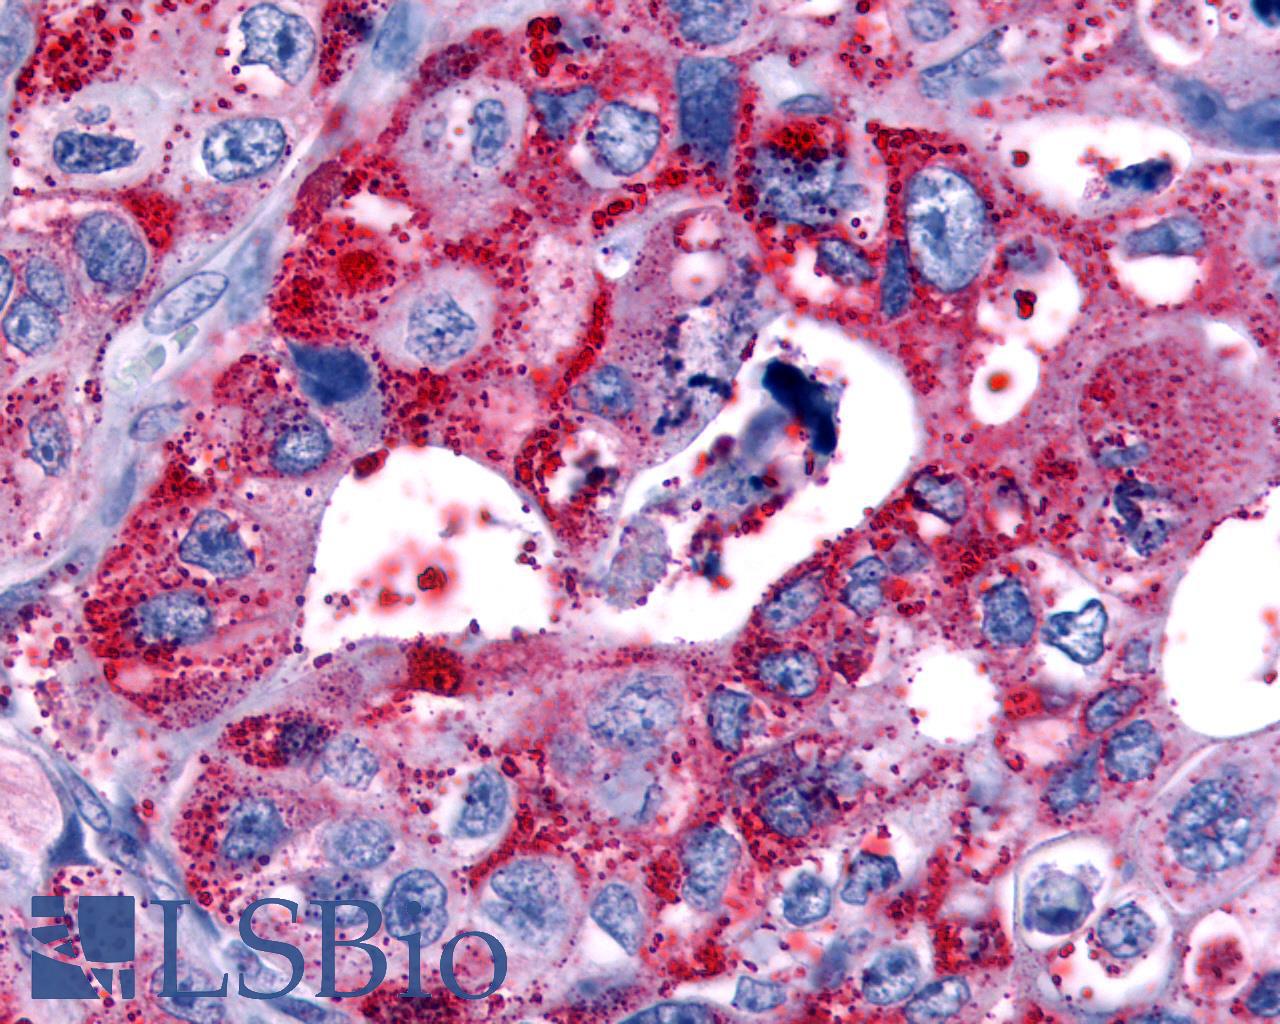 HRH4 / Histamine H4 Receptor Antibody - Pancreas, carcinoma